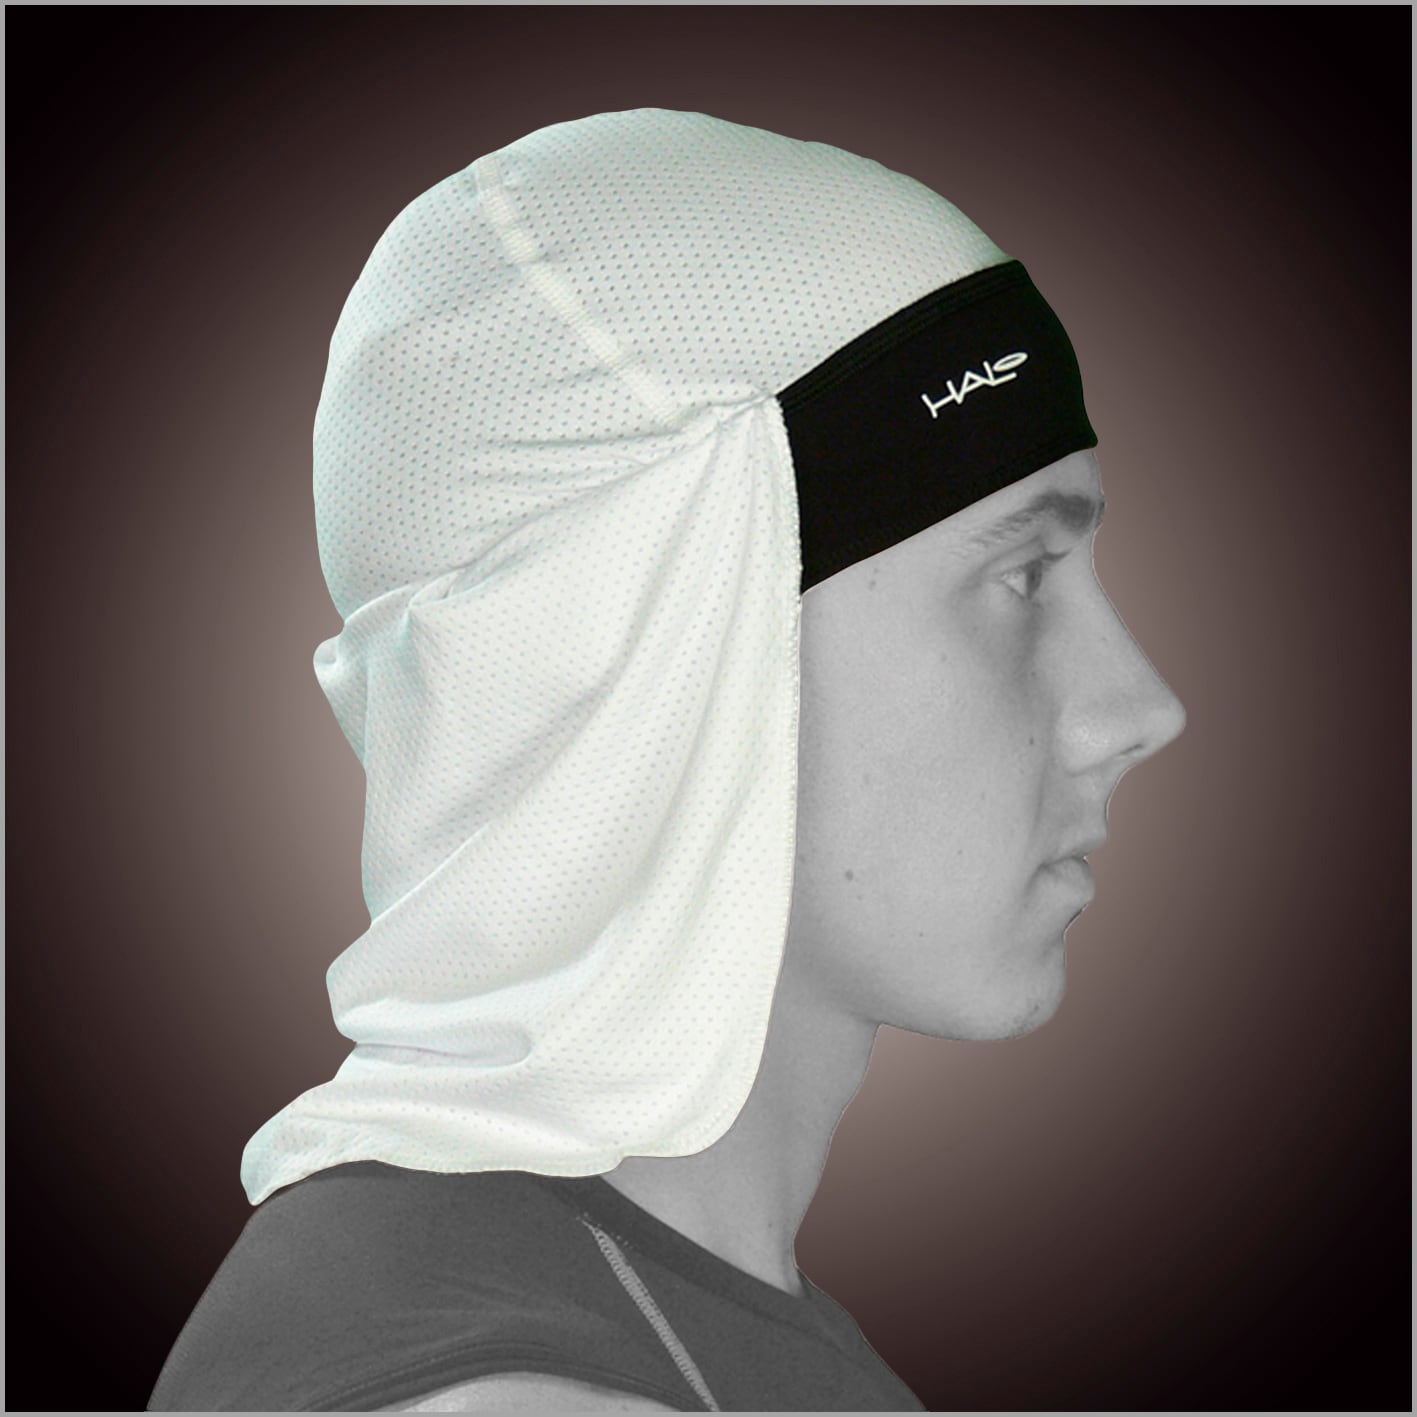 キャップ後部の布が首や耳までカバーし、高い紫外線防止効果がある商品